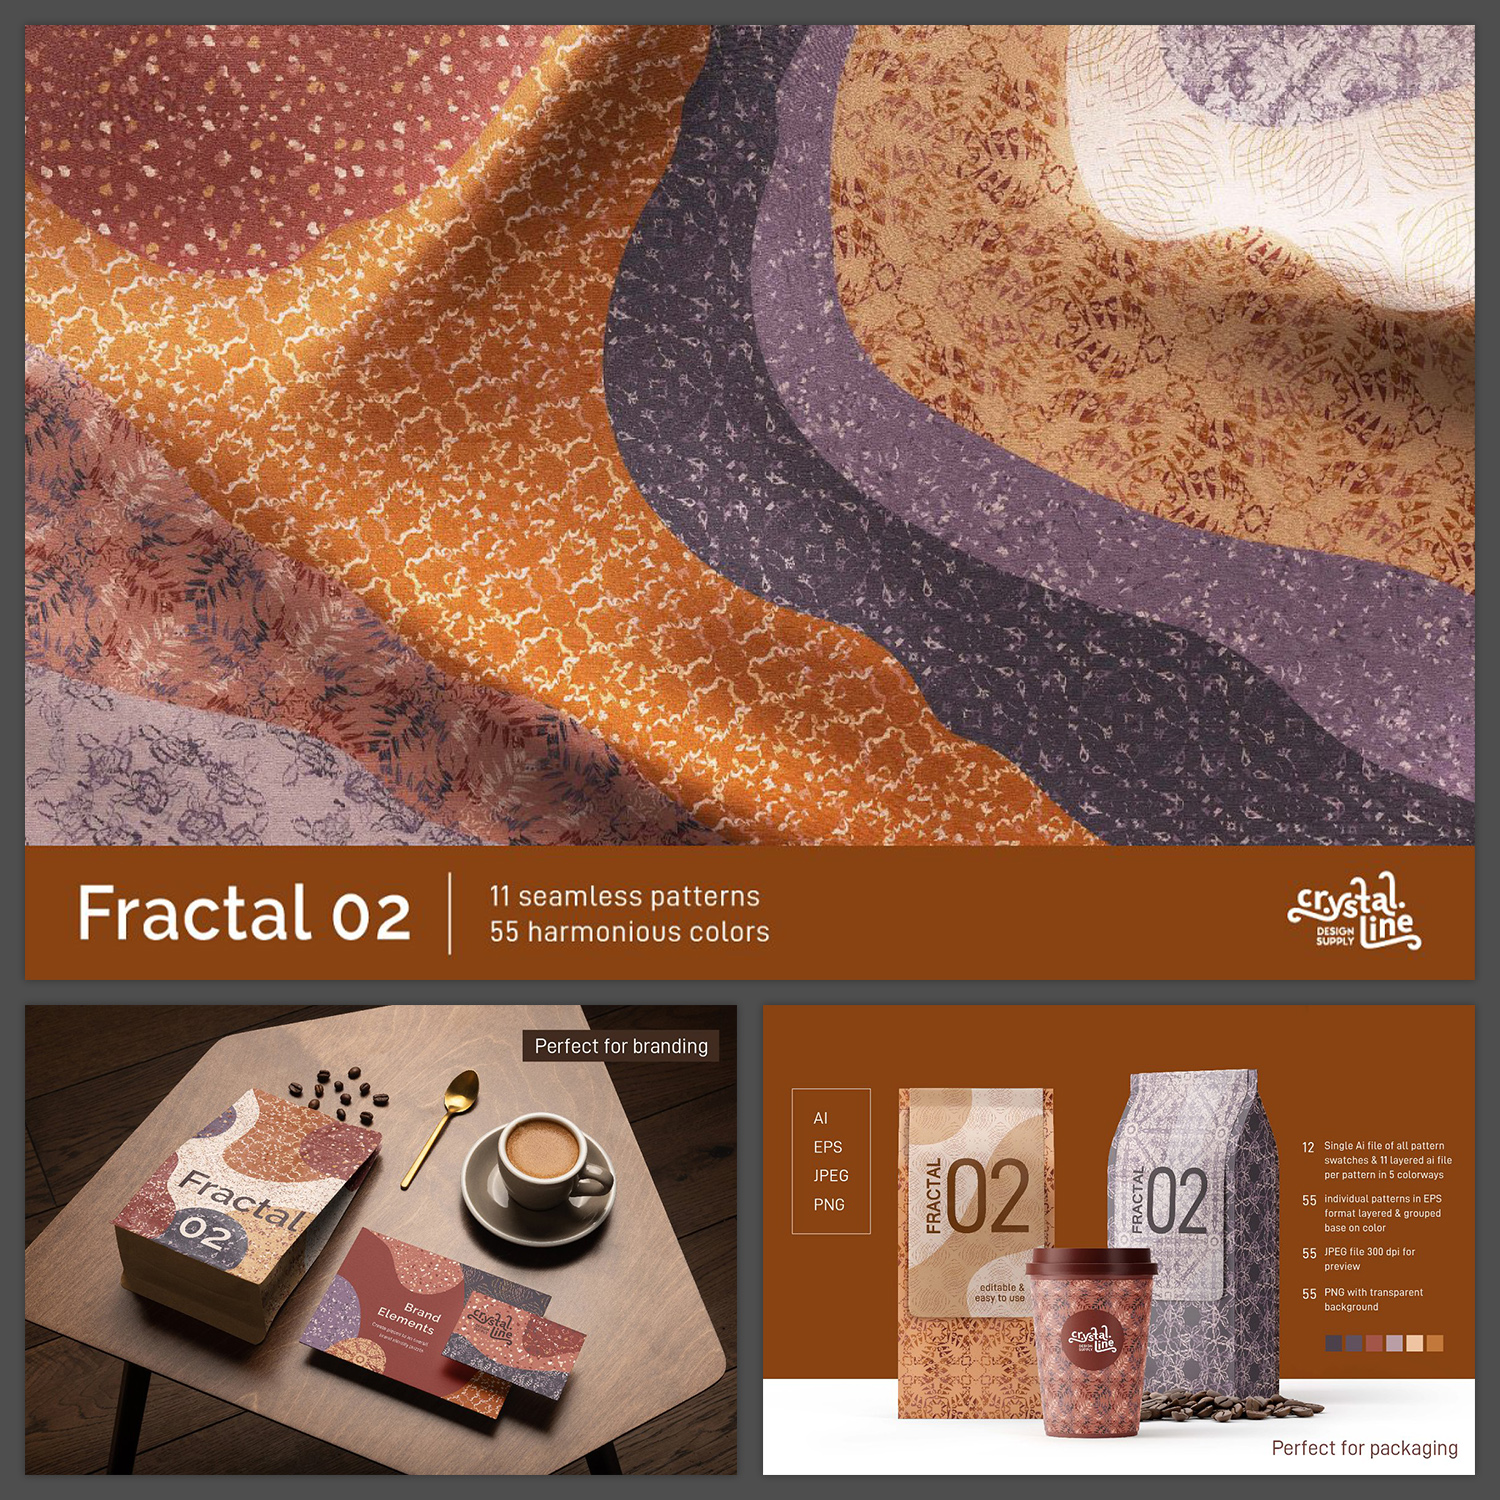 Fractal Patterns 02 cover image.